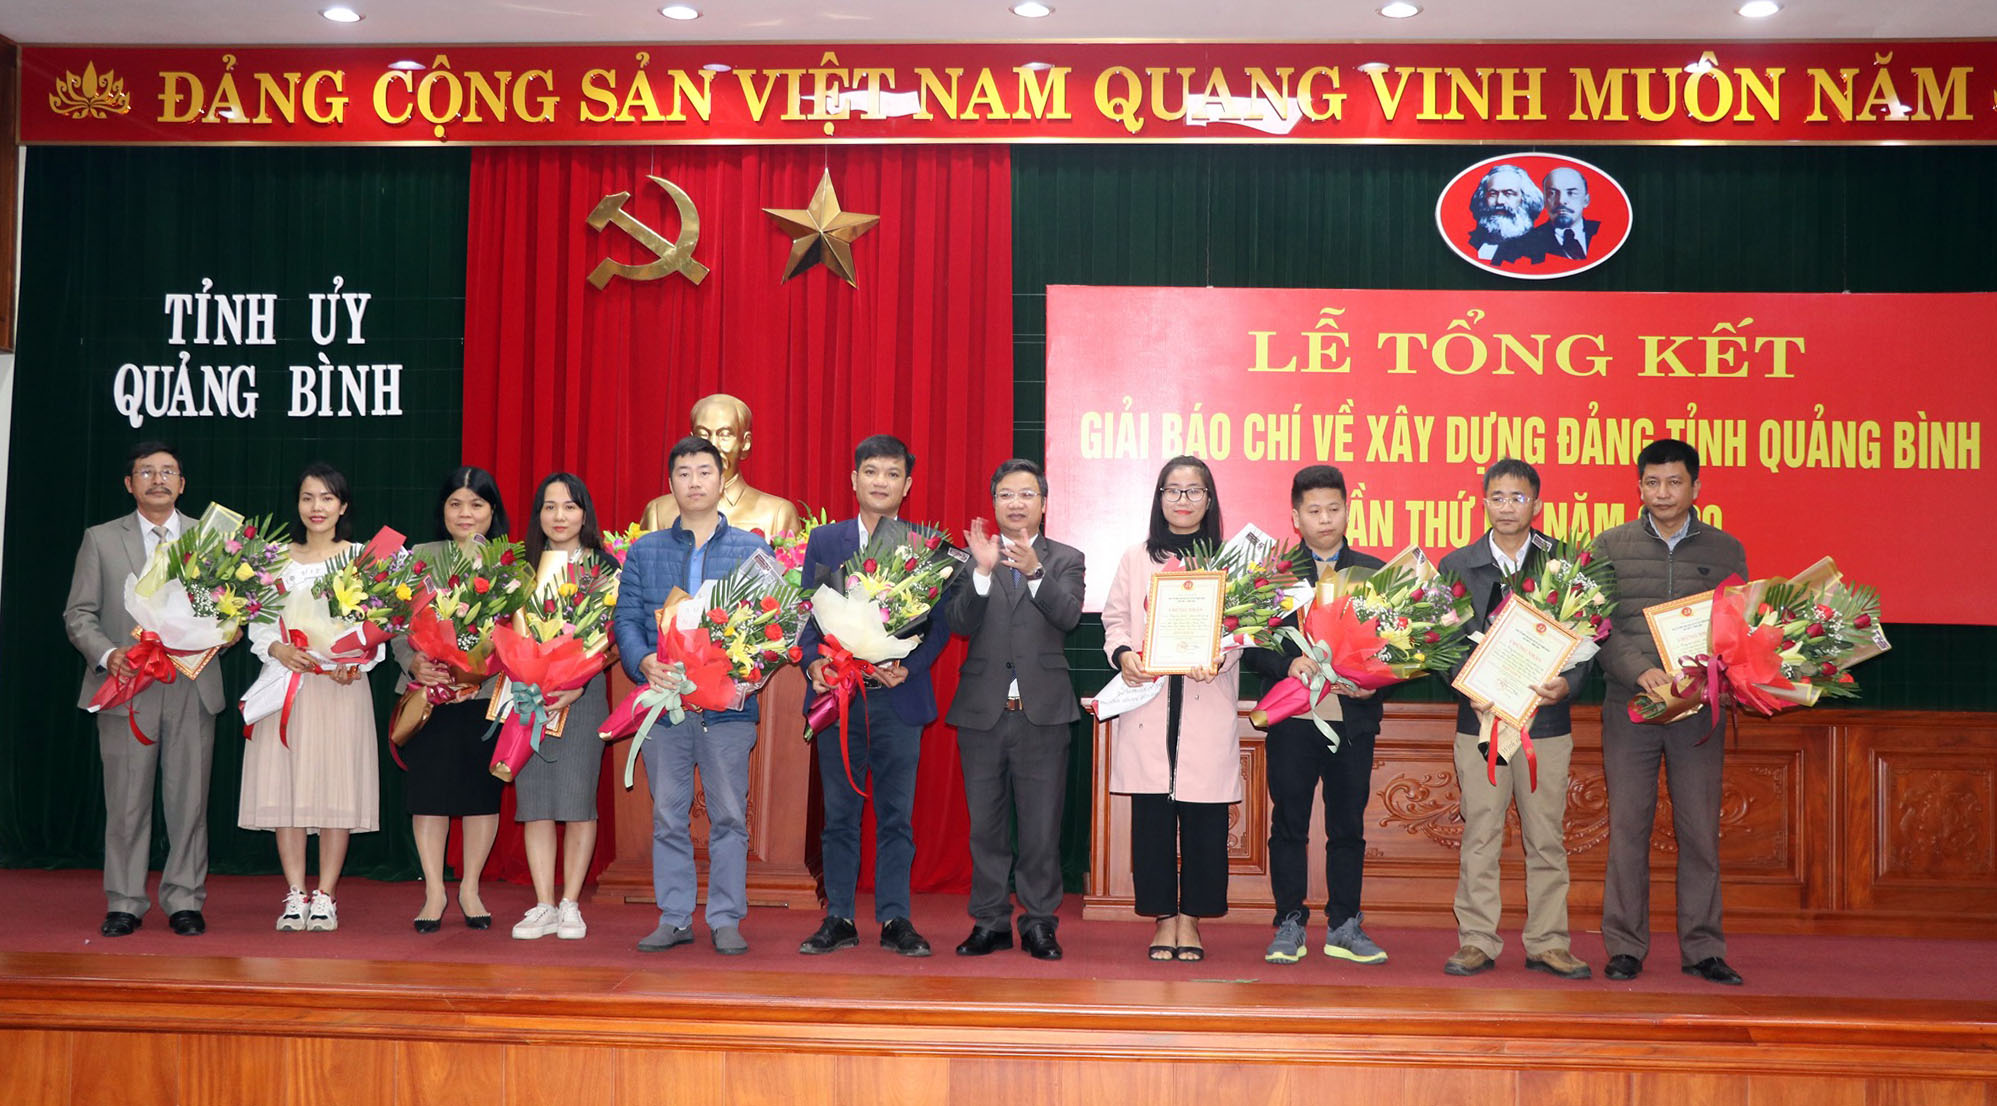  Đồng chí Cao Văn Định, Ủy viên Ban Thường vụ Tỉnh ủy, Phó Trưởng Ban tổ chức giải trao giải B cho các tác giá, nhóm tác giả